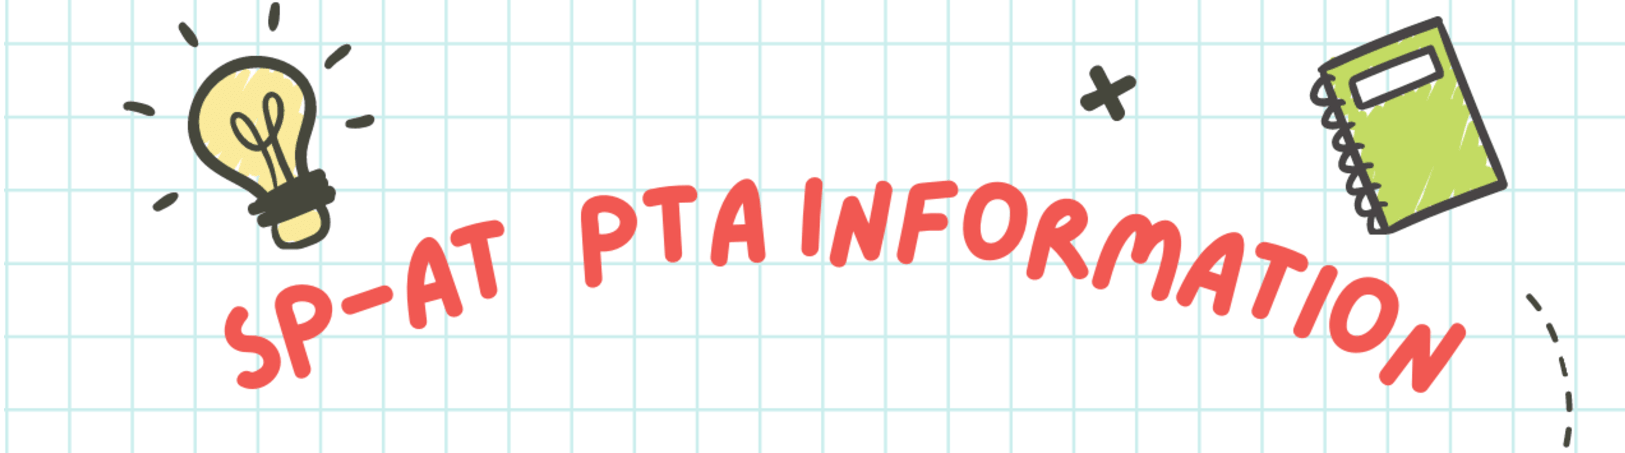 Información de la PTA de Sp-At